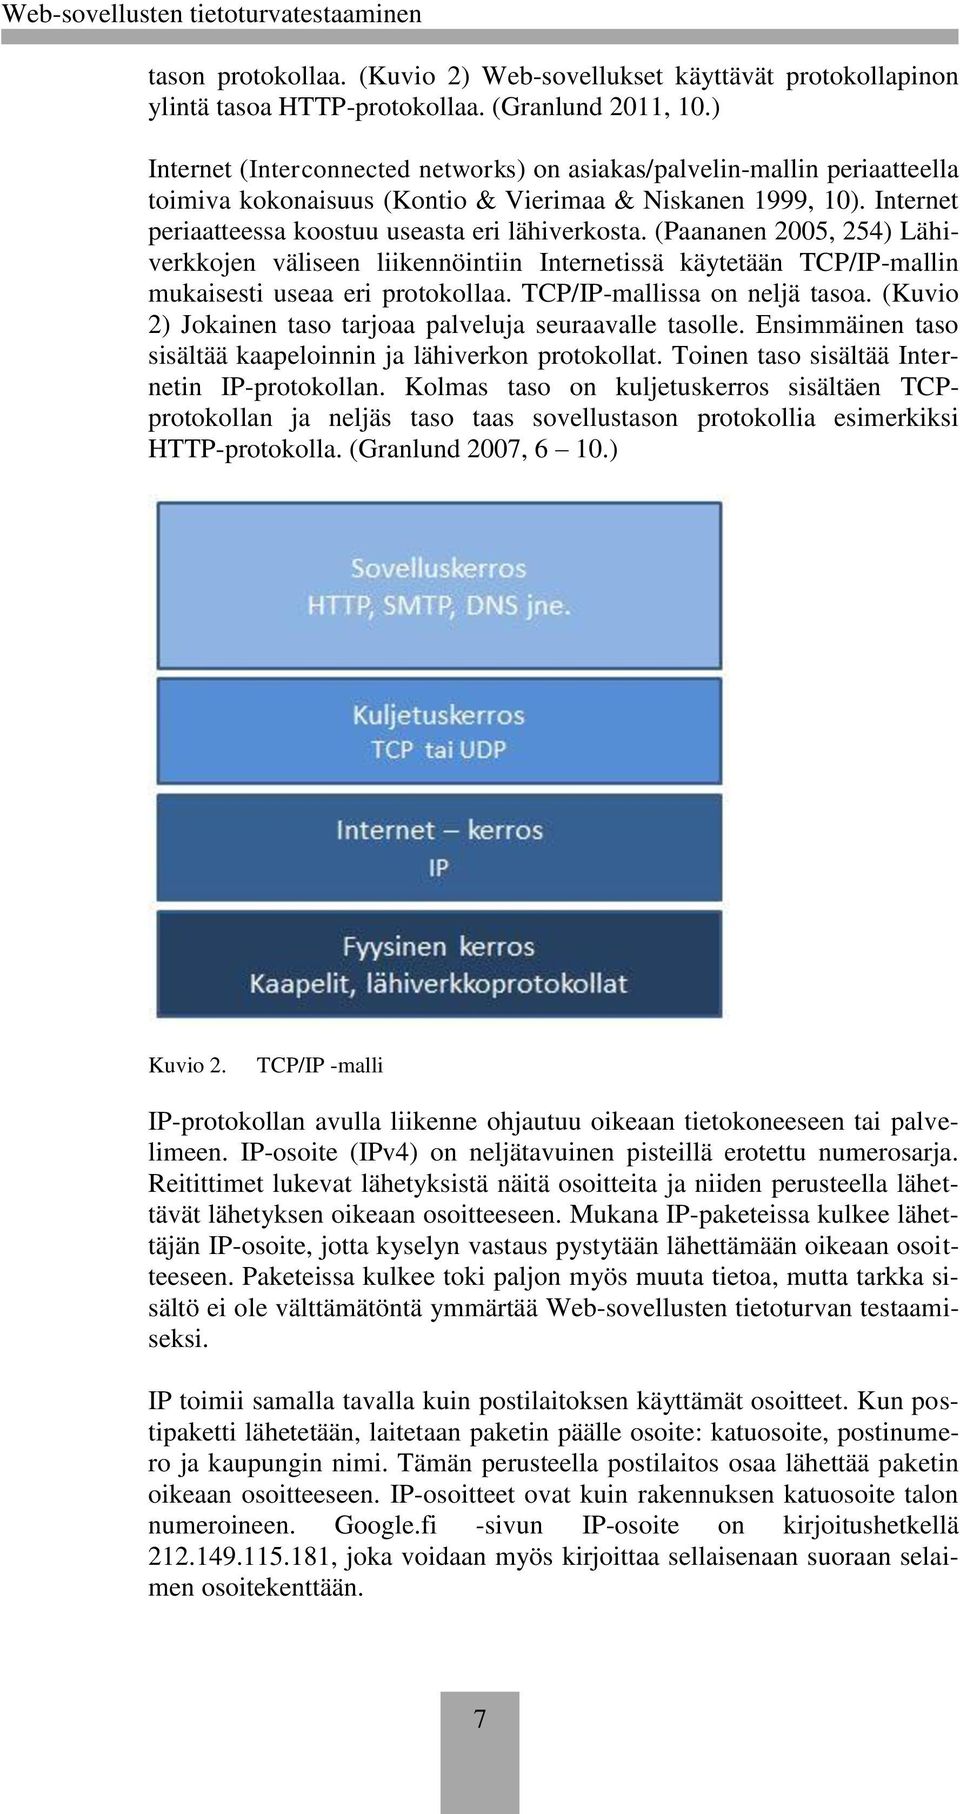 (Paananen 2005, 254) Lähiverkkojen väliseen liikennöintiin Internetissä käytetään TCP/IP-mallin mukaisesti useaa eri protokollaa. TCP/IP-mallissa on neljä tasoa.